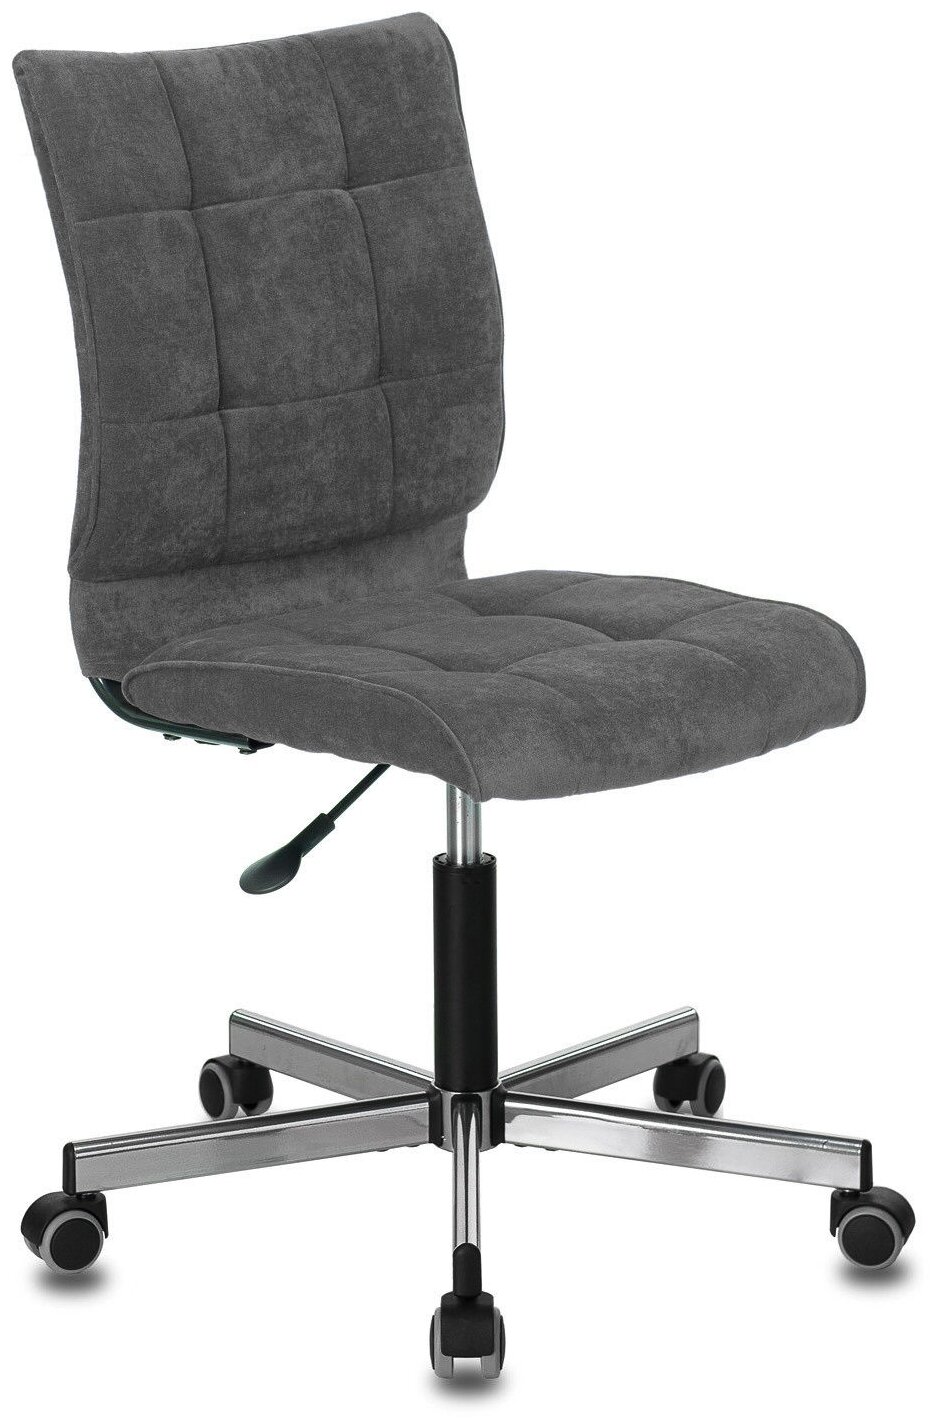 Офисное кресло Экспресс офис КС-1330 обивка: текстиль цвет: микровельвет velvetlux 17